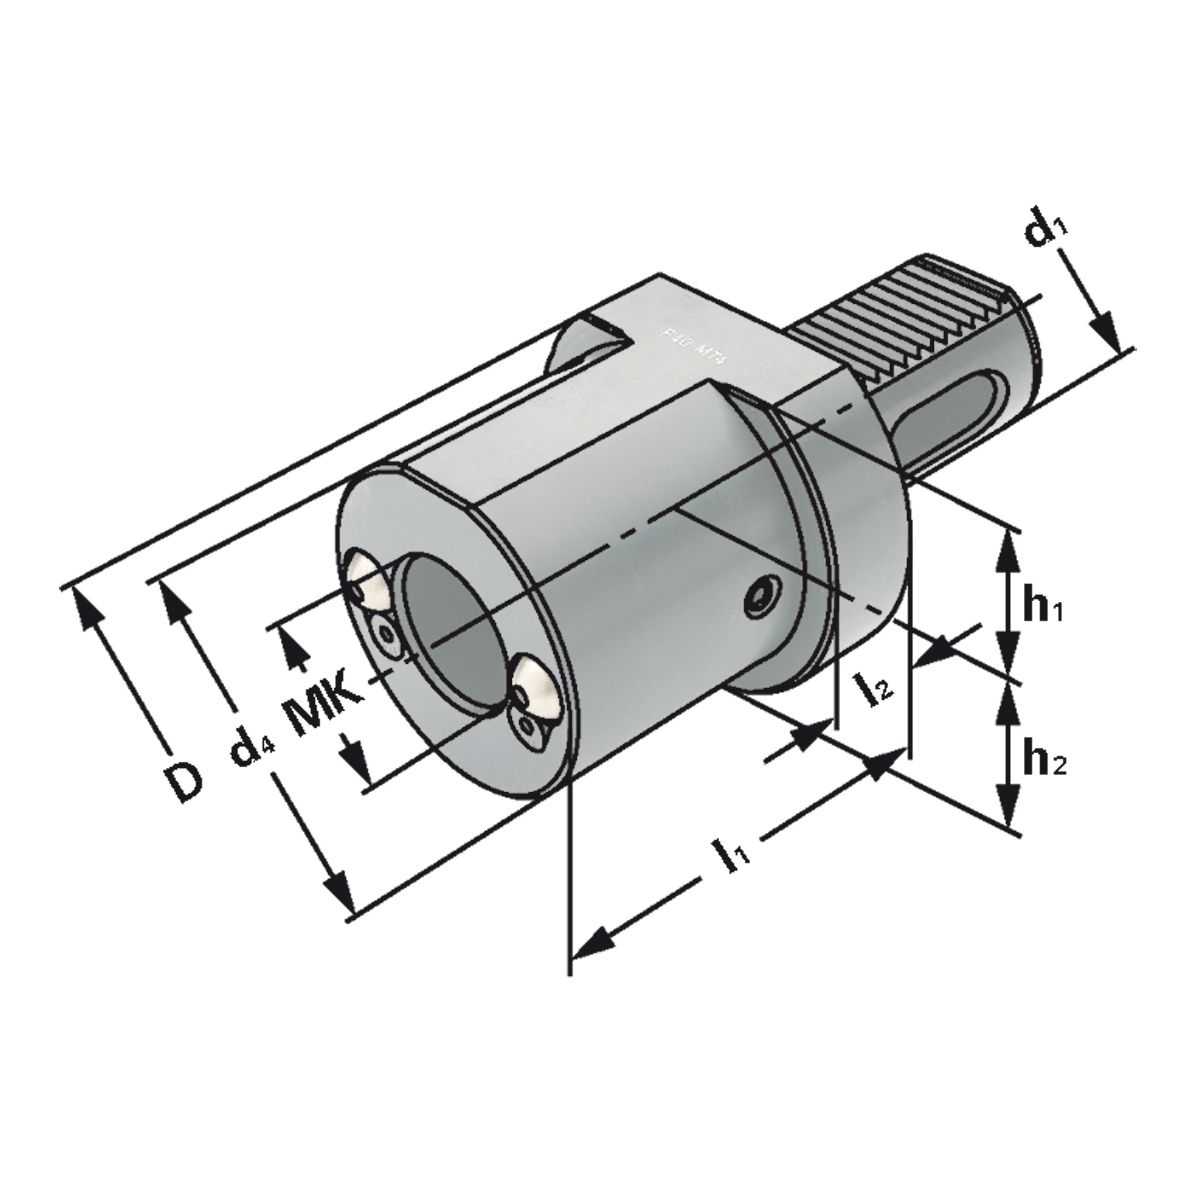 Bohrerhalter für MK-Werkzeuge F1-16xMK1 DIN 69880 (ISO 10889)